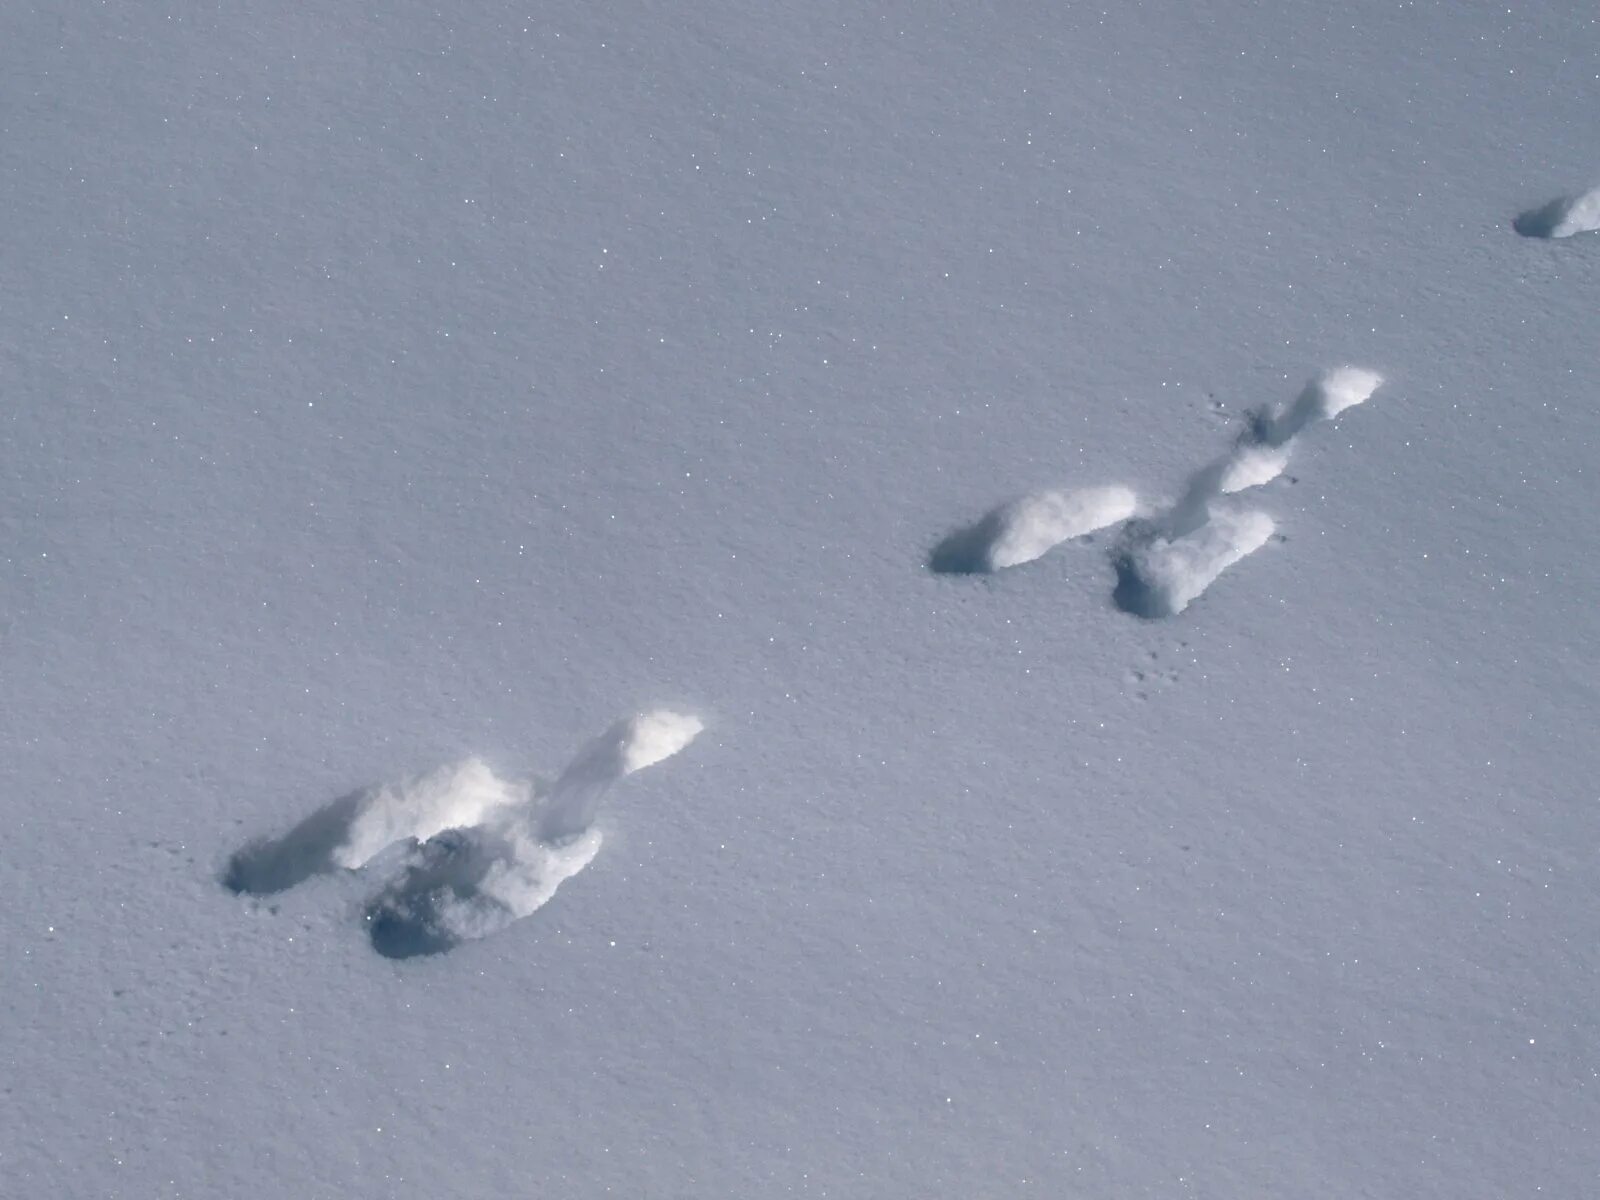 Заячьи и лисьи следы на снегу. Следы зайца на снегу. Следы зайца беляка. Следы зайца русака. Следы зайца беляка на снегу.